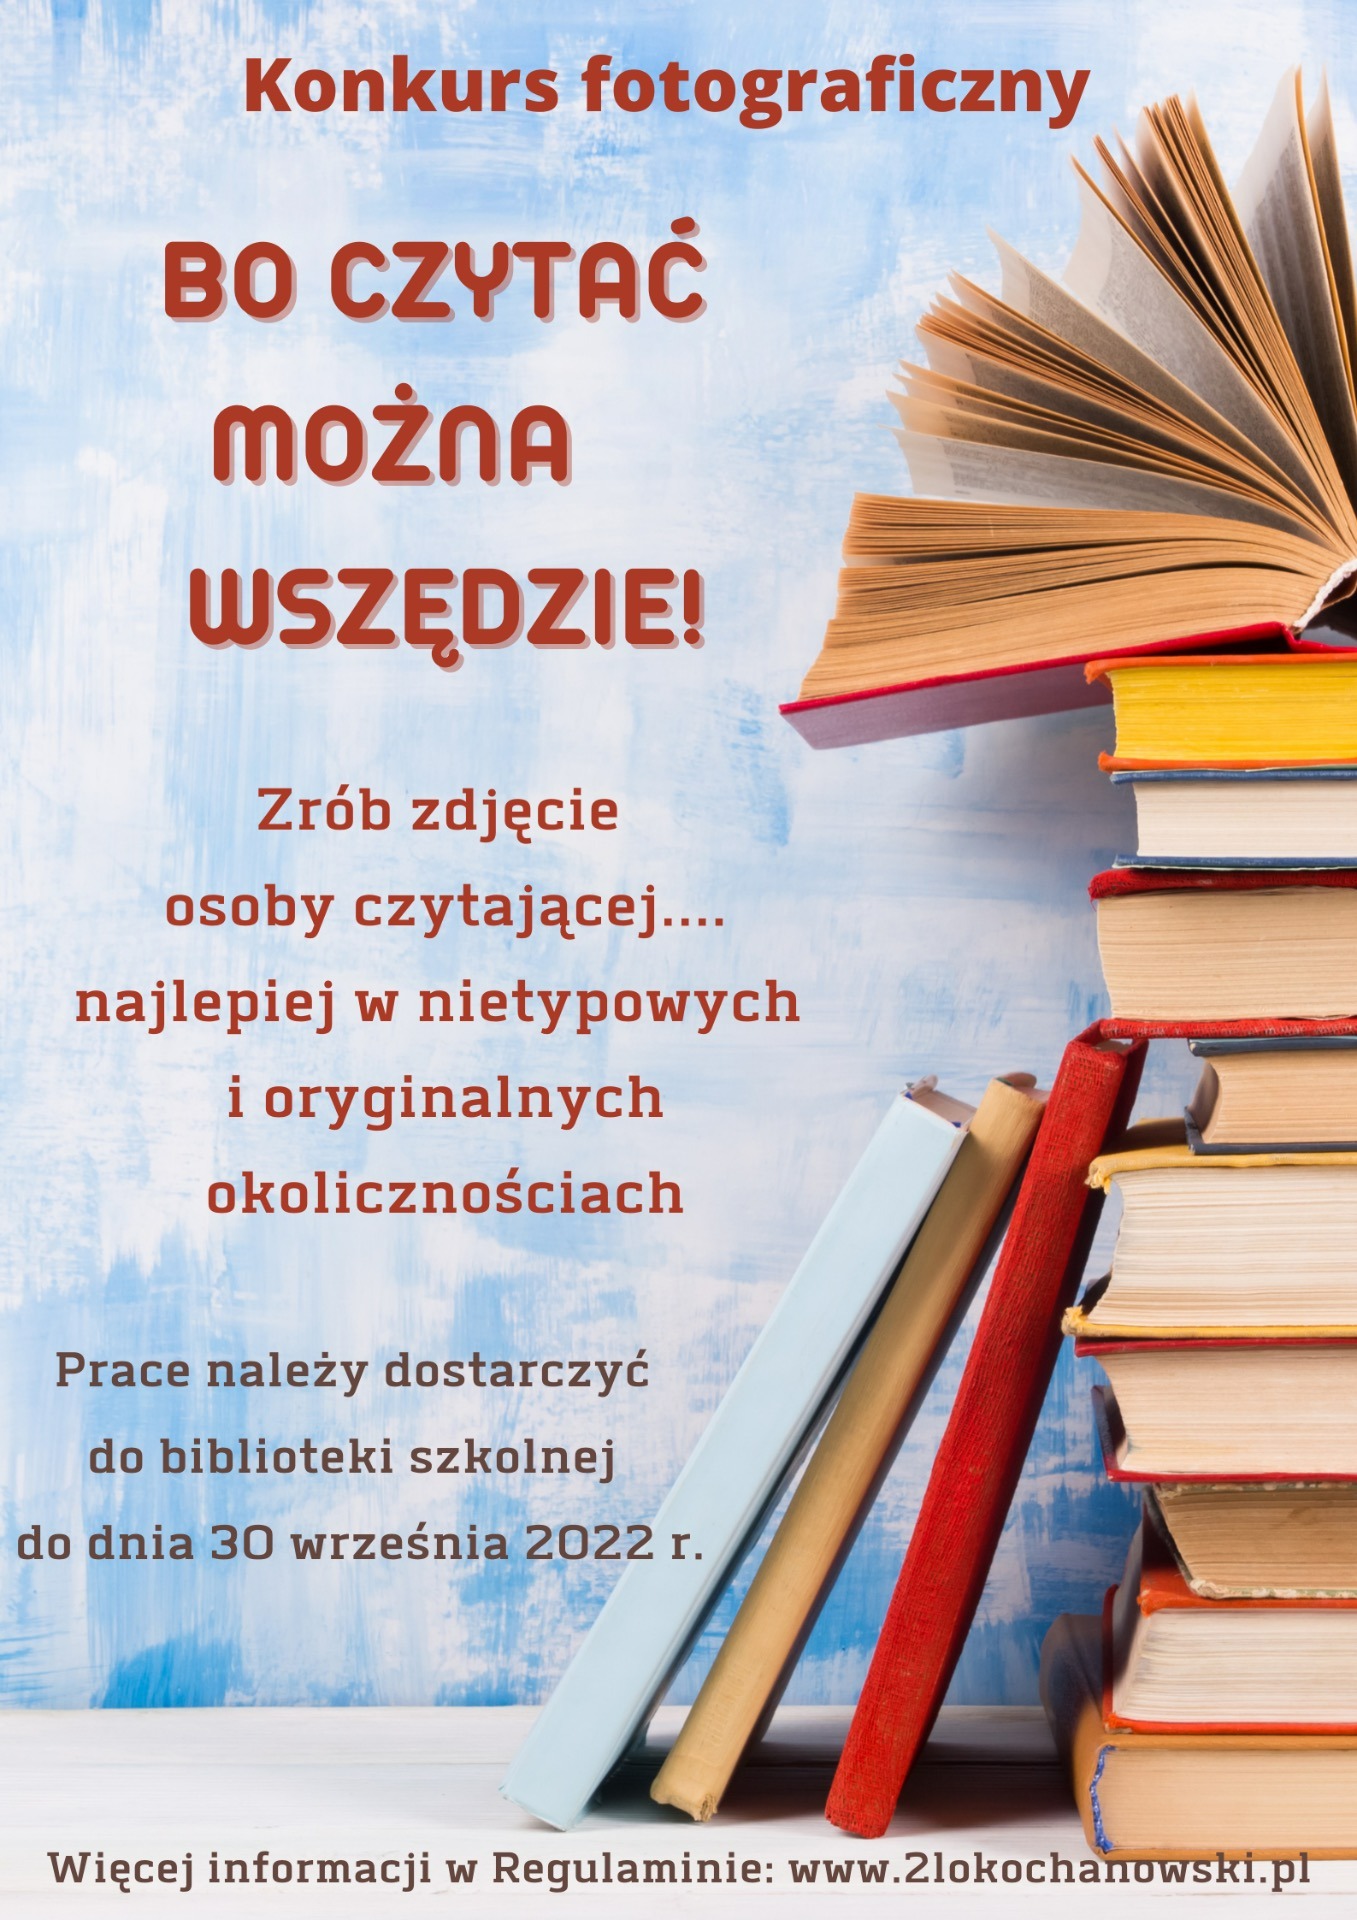 Plakat z książkami promujący konkurs fotograficzny "Bo czytać można wszędzie"